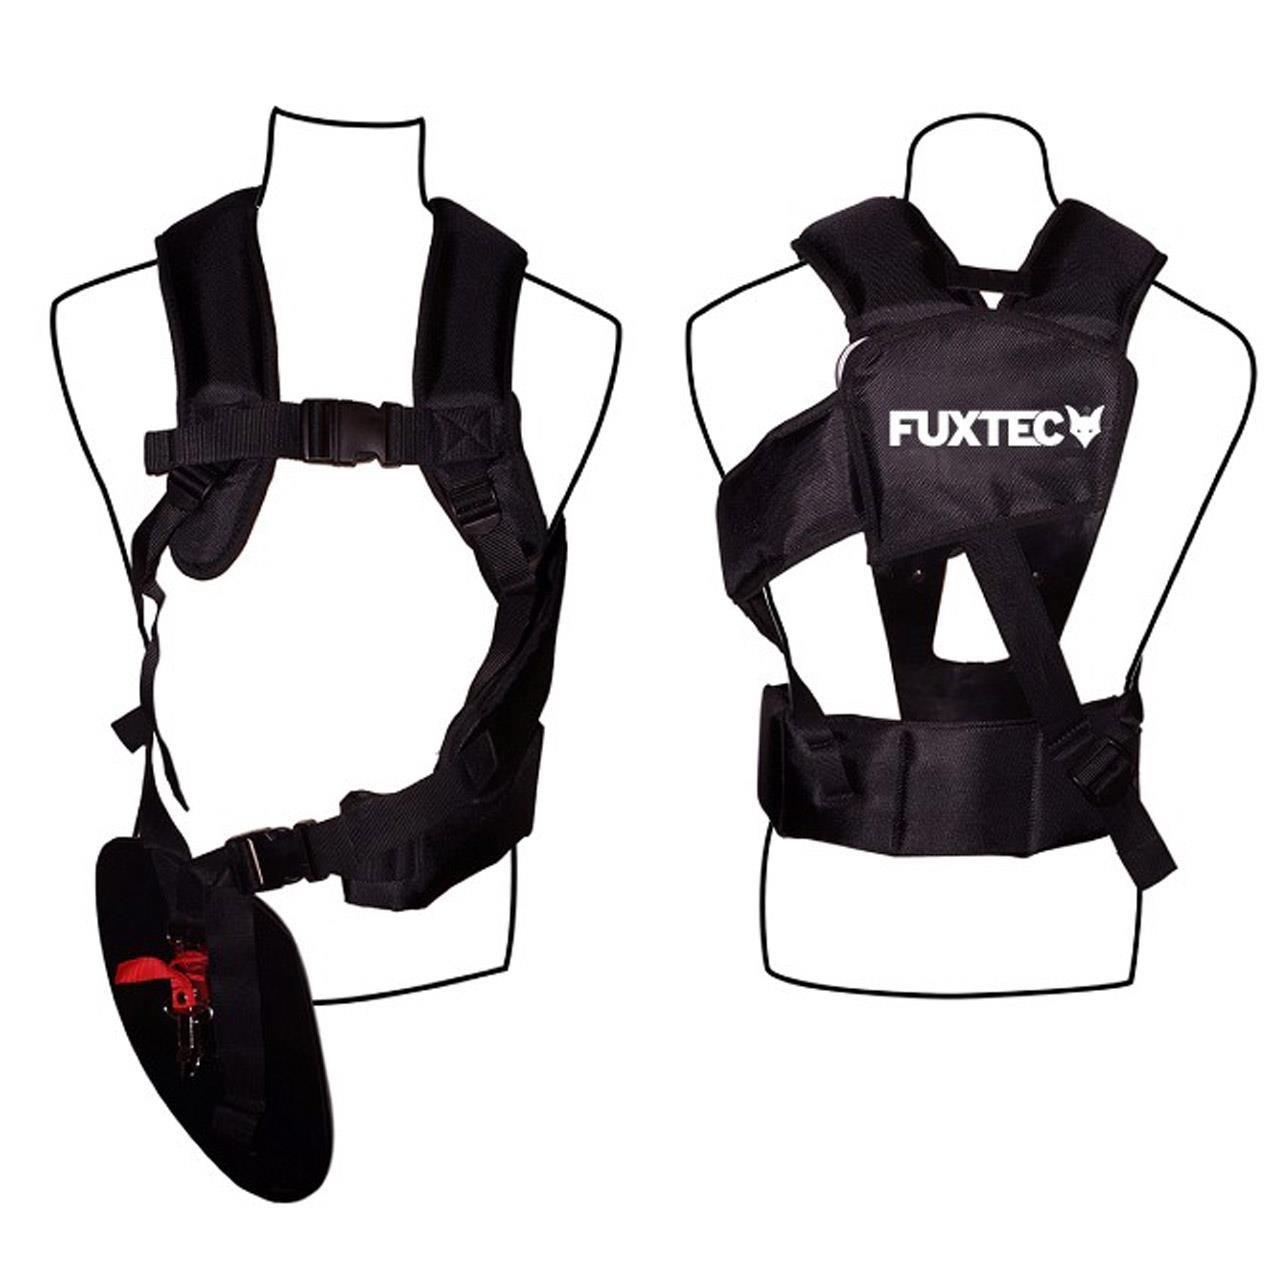 Original FUXTEC professional carrying strap